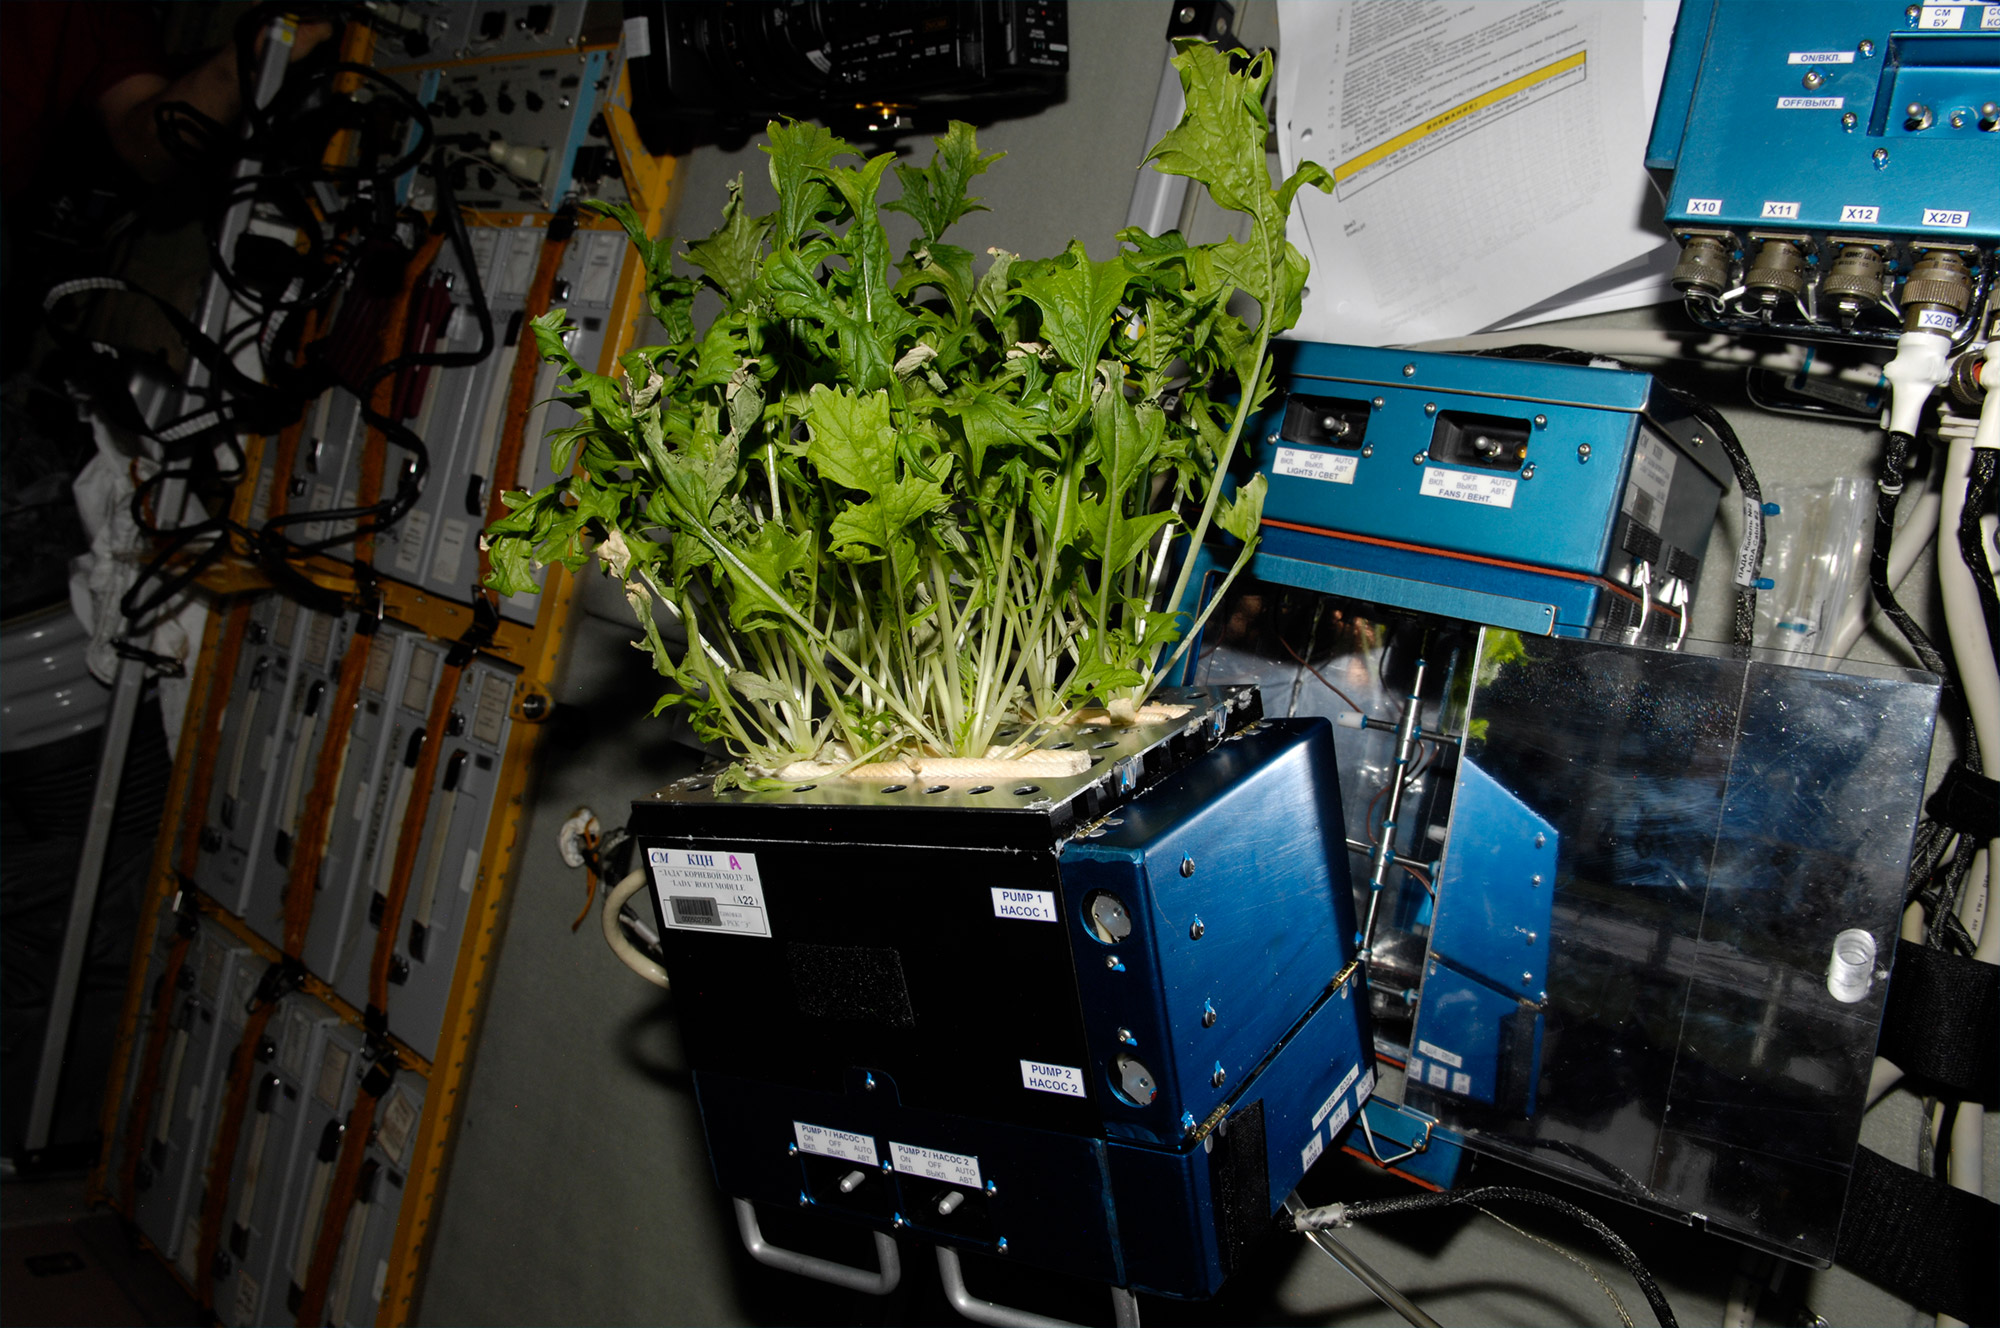 À bord de la Station spatiale, les astronautes ont déjà cultivé dans une serre des salades qu'ils ont ensuite mangées après s'être assurés qu'elles ne présentaient pas de risque pour leur santé. © Nasa